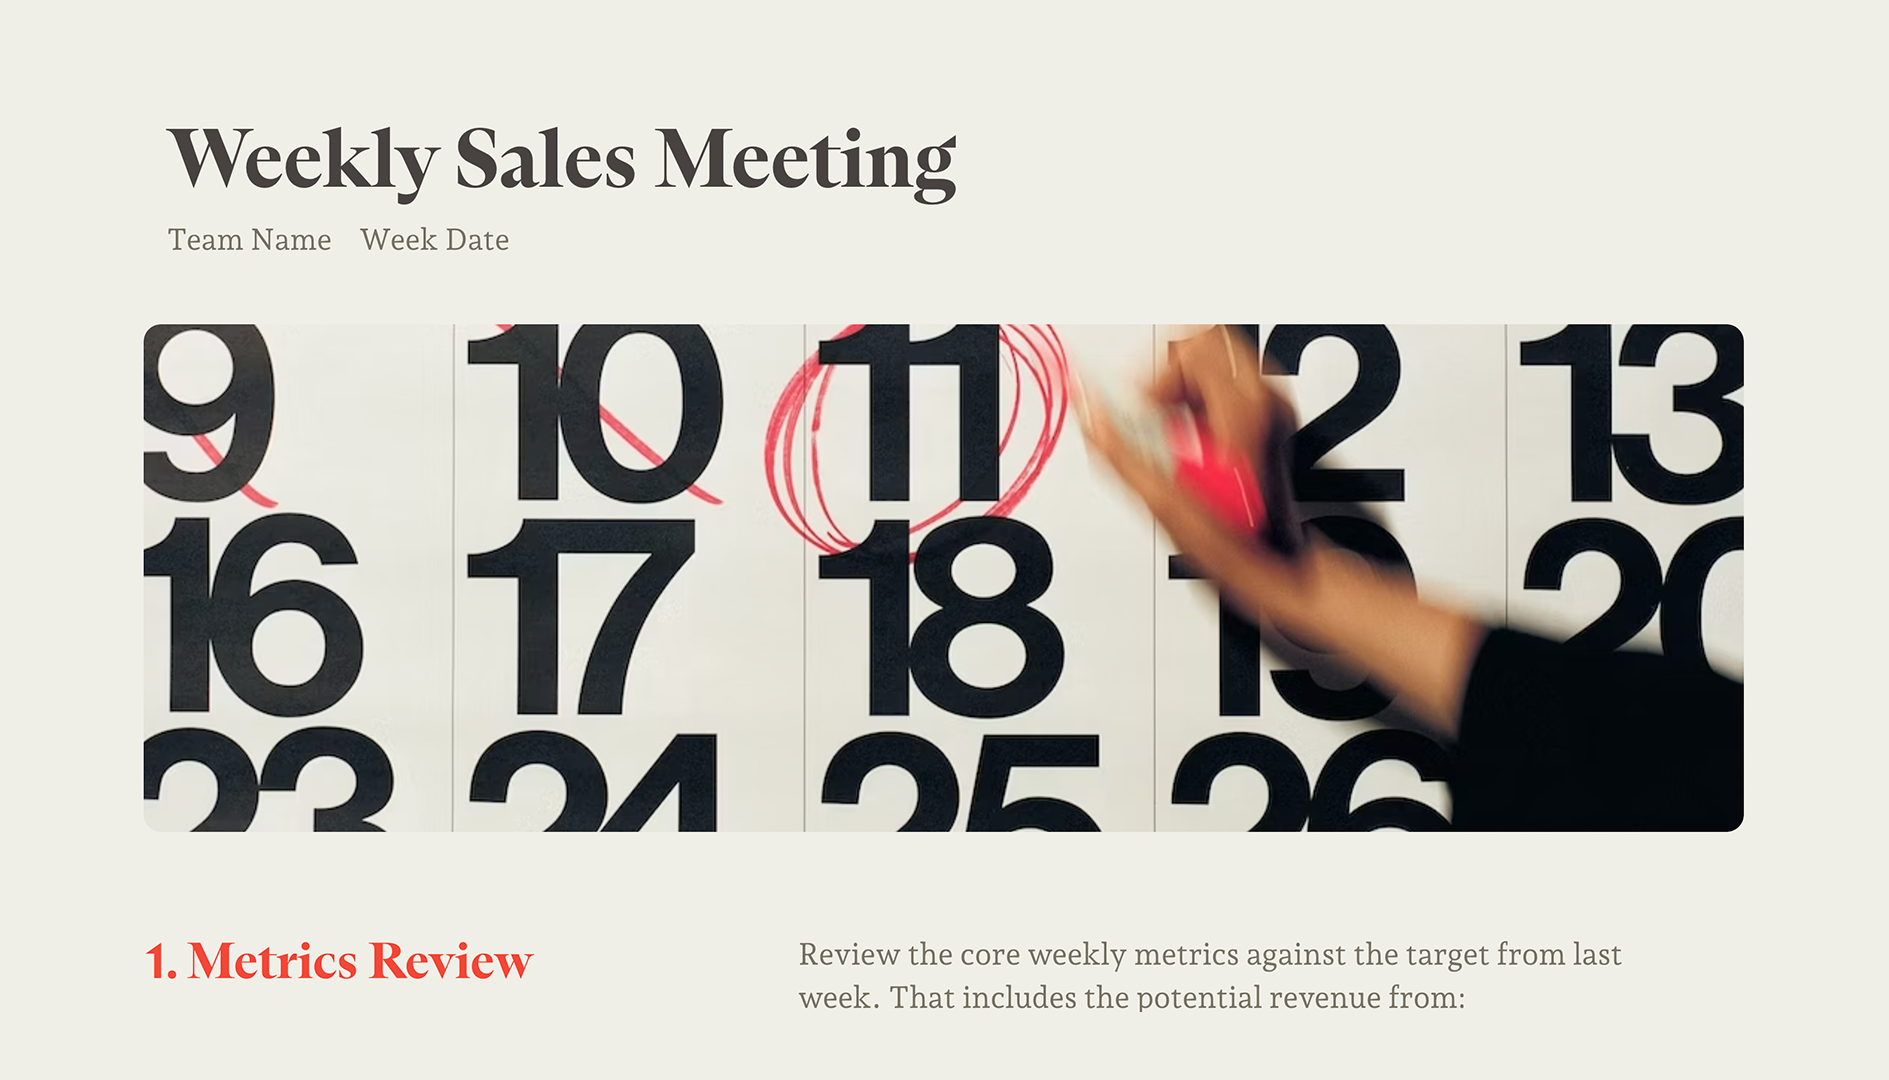 Weekly Sales Meeting - Top